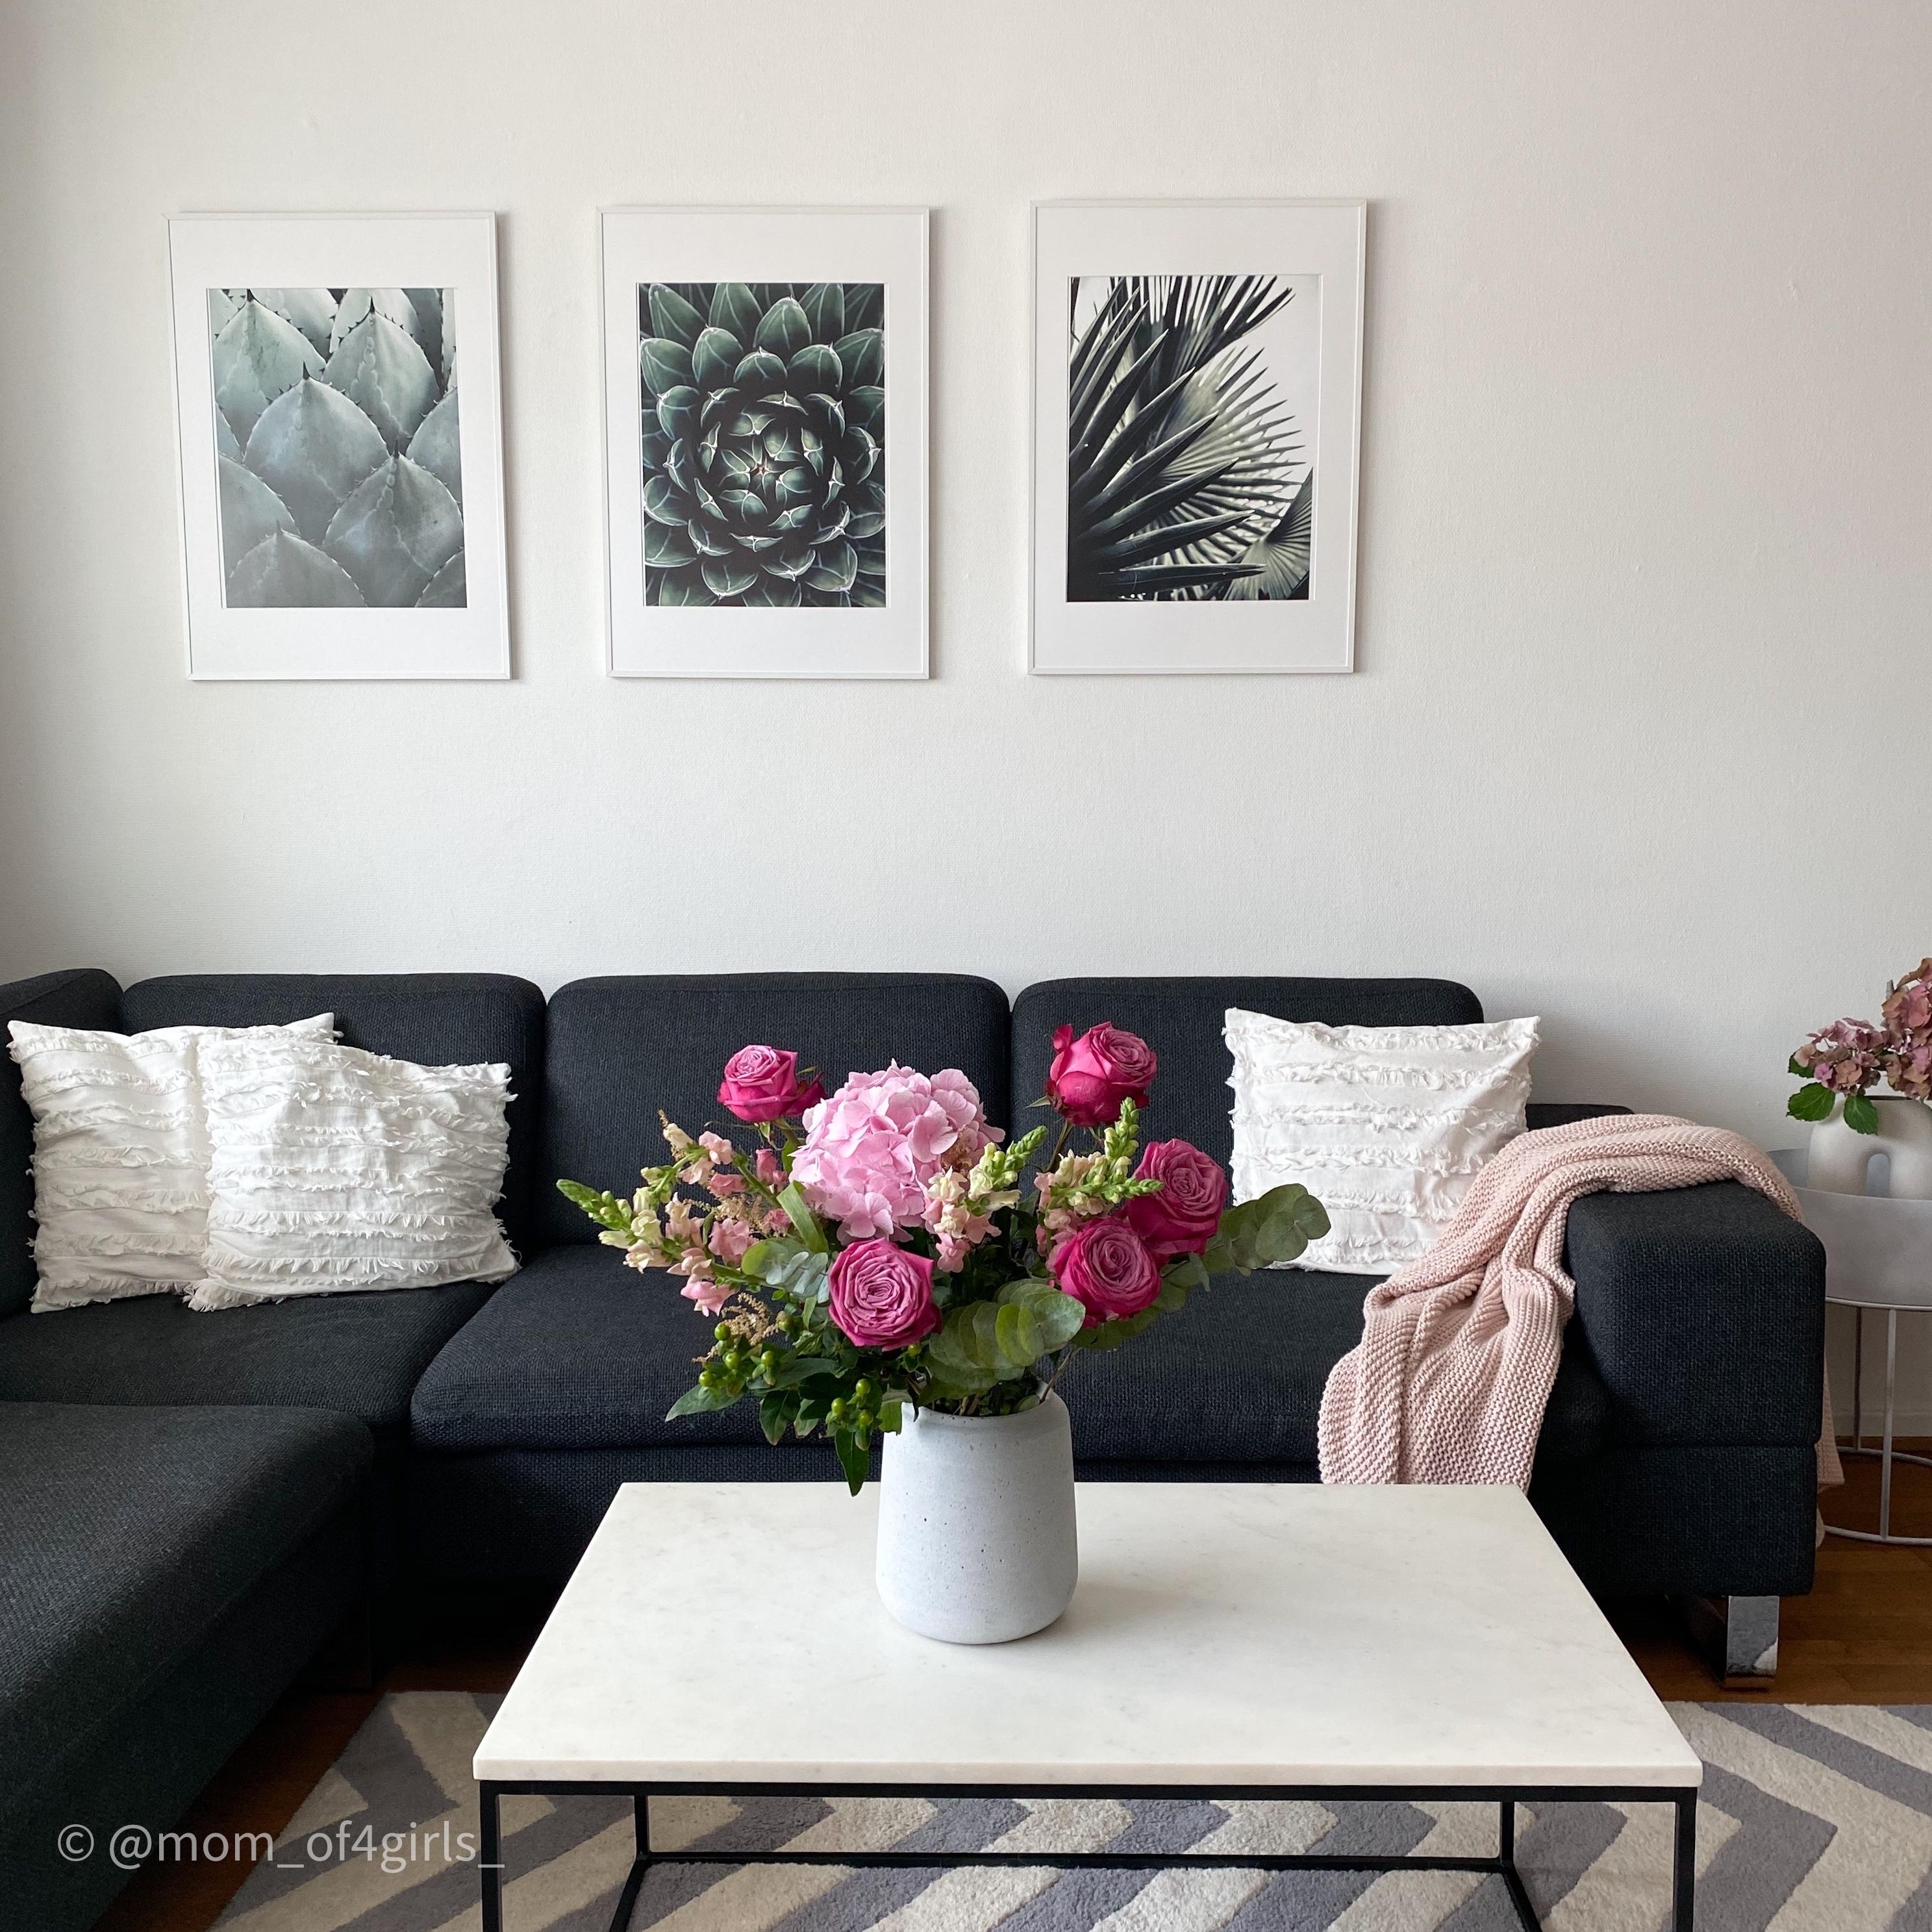 #wohnzimmer #livingroom #wohnzimmerinspo #livingroominspiration #poster #couchtisch #couch #blumenstrauss #freshflowers 